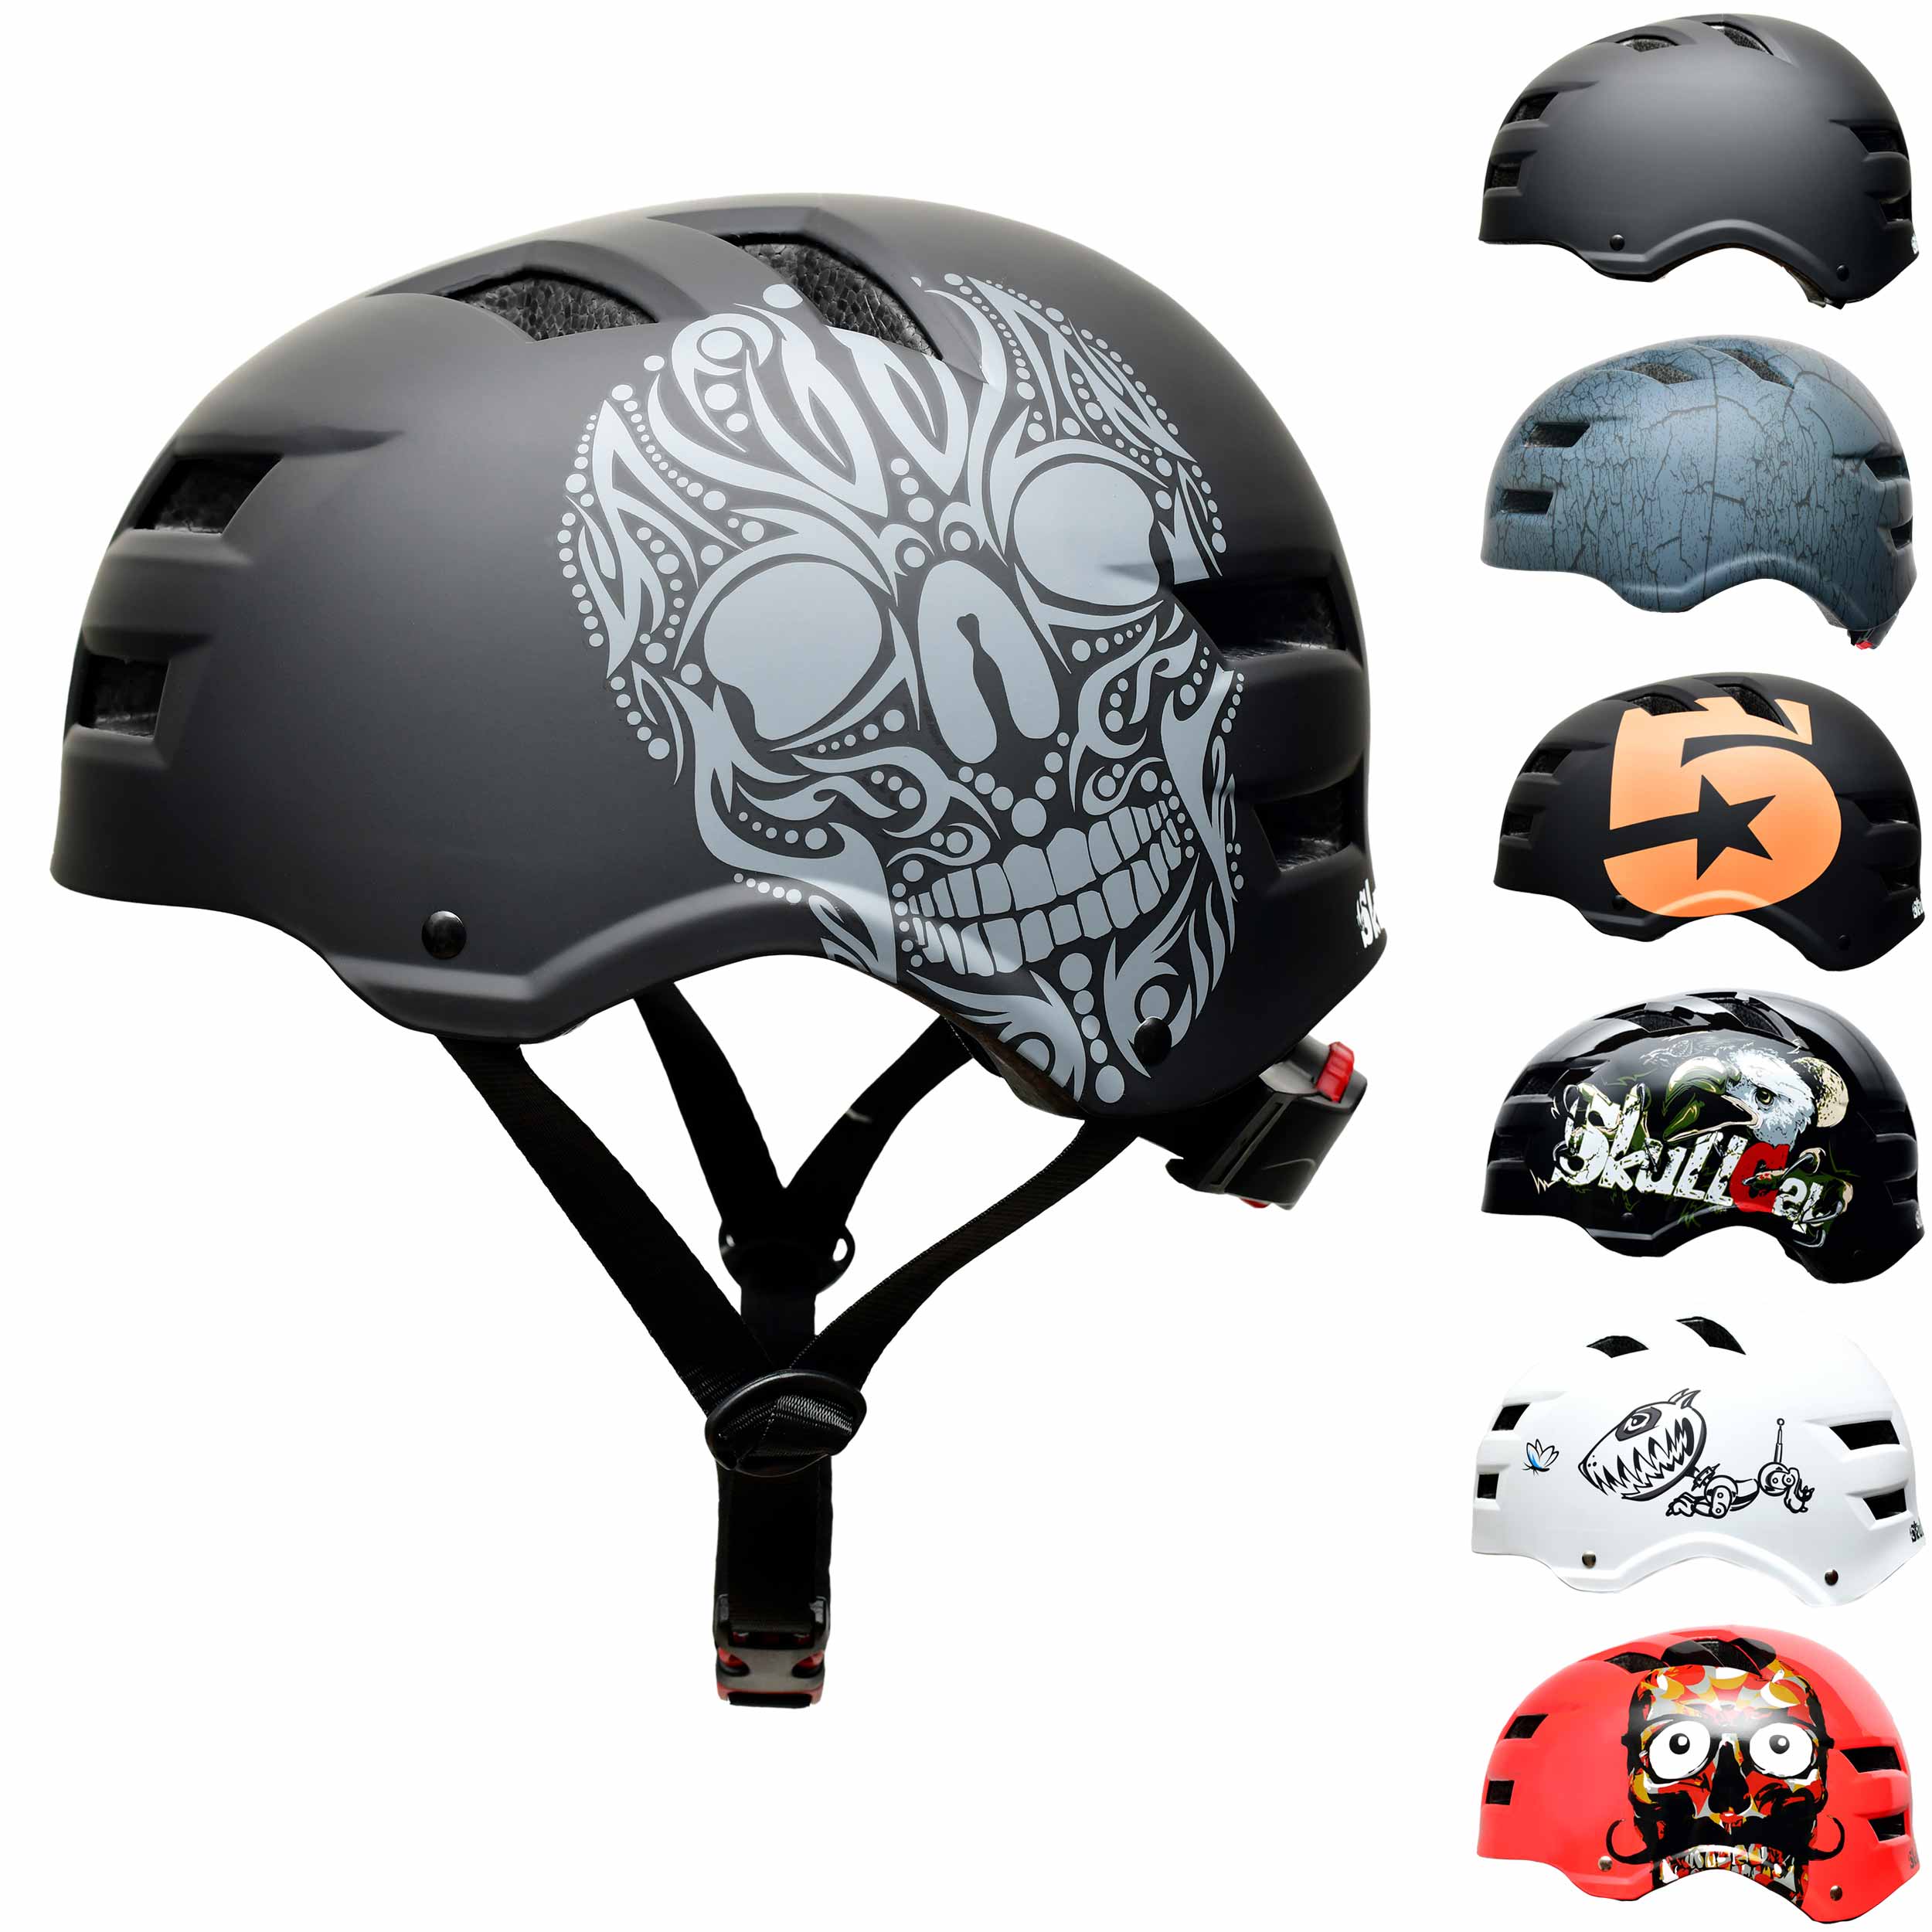 Fahrrad Helm Skaterhelm Schutzhelm für Fahrrad Skateboard 